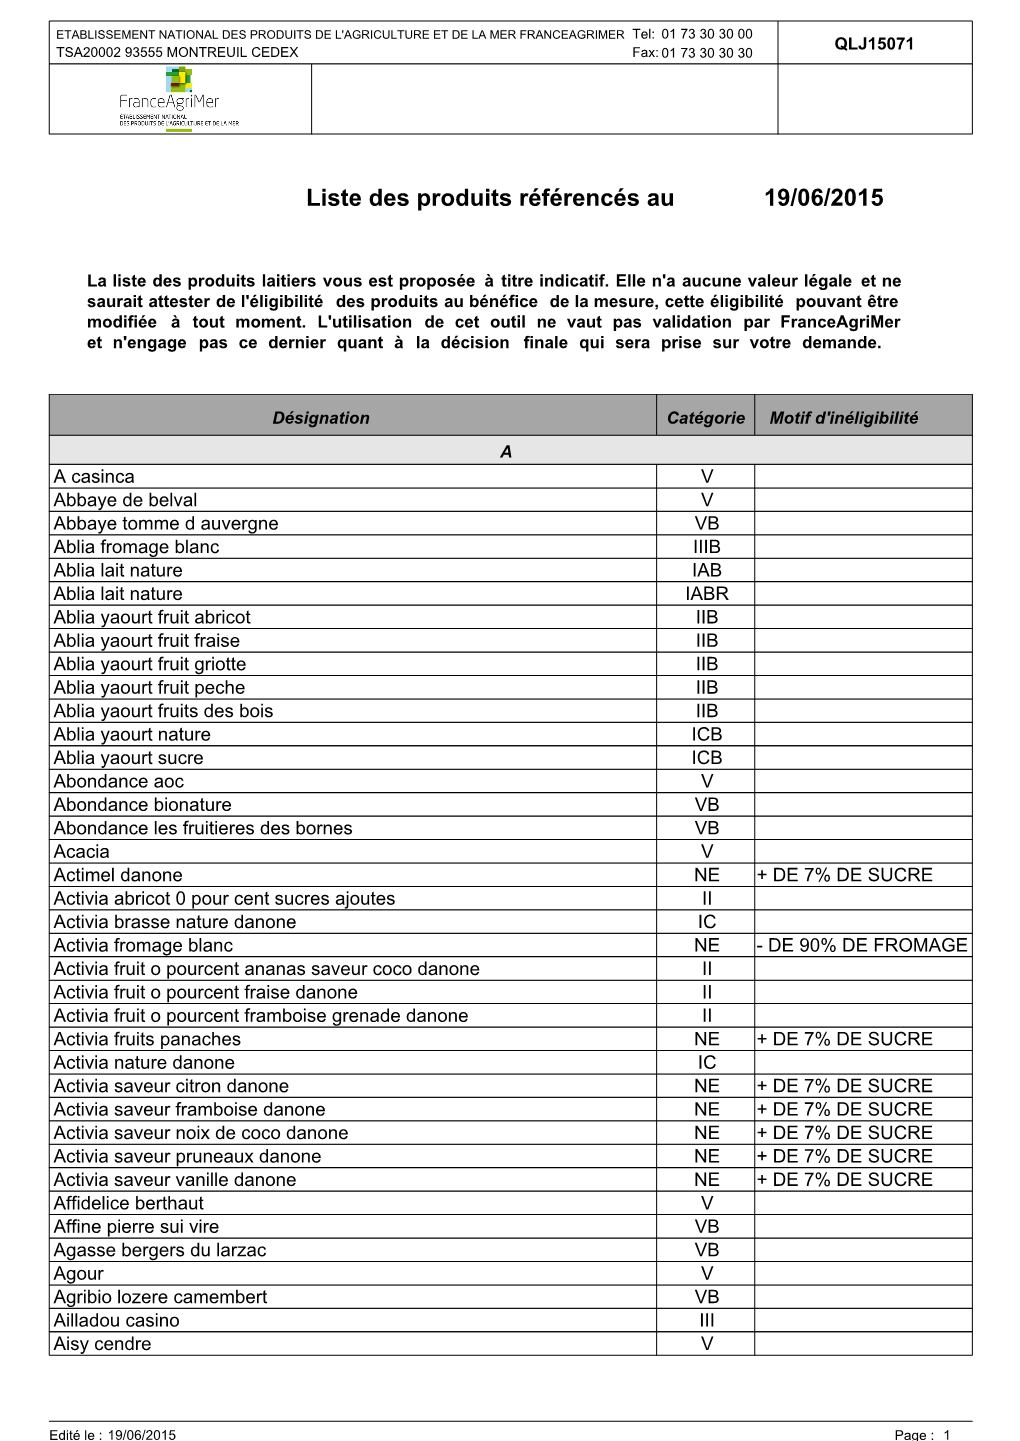 Liste Des Produits Référencés Au 19/06/2015